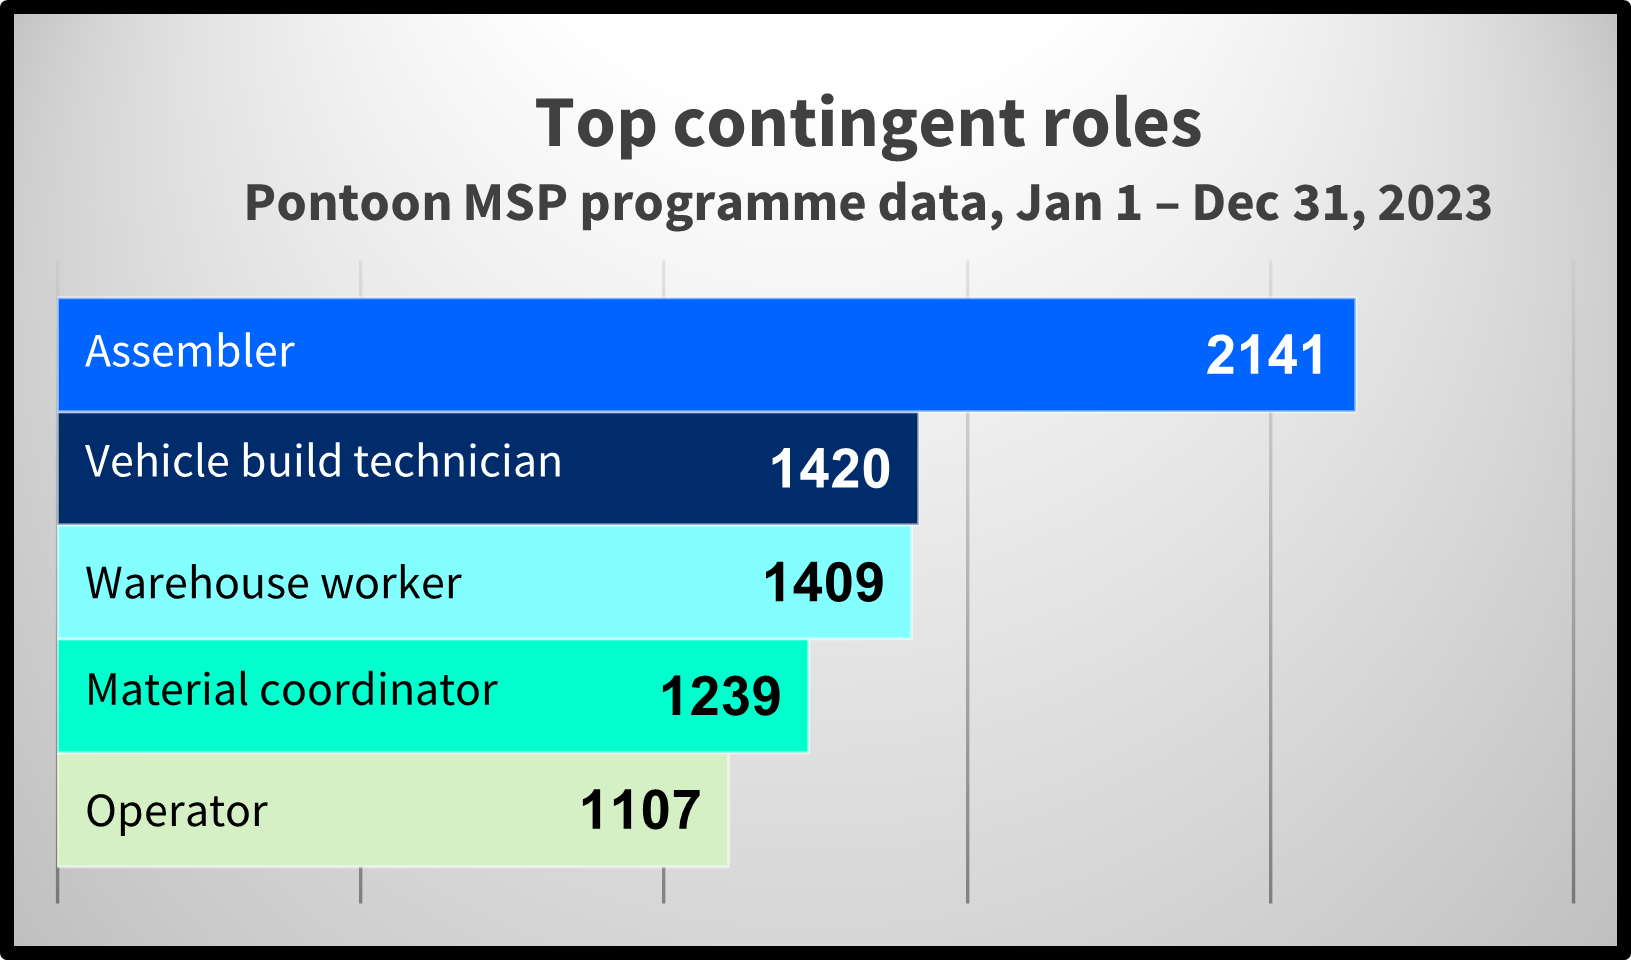 Top contingent roles, Pontoon MSP data